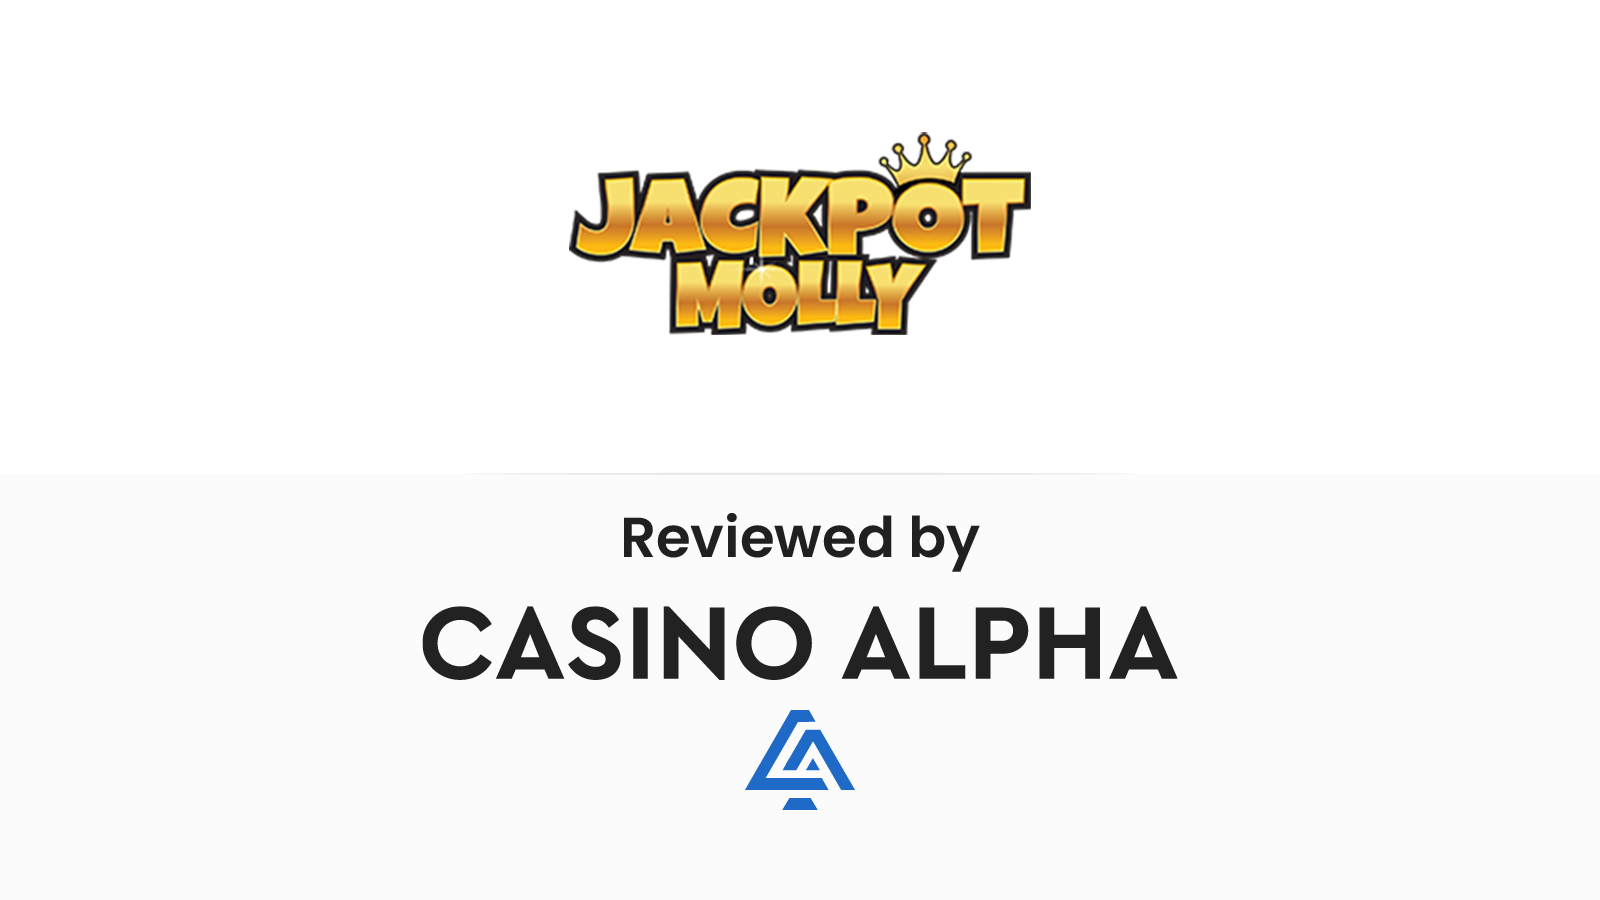 Jackpot Molly Casino